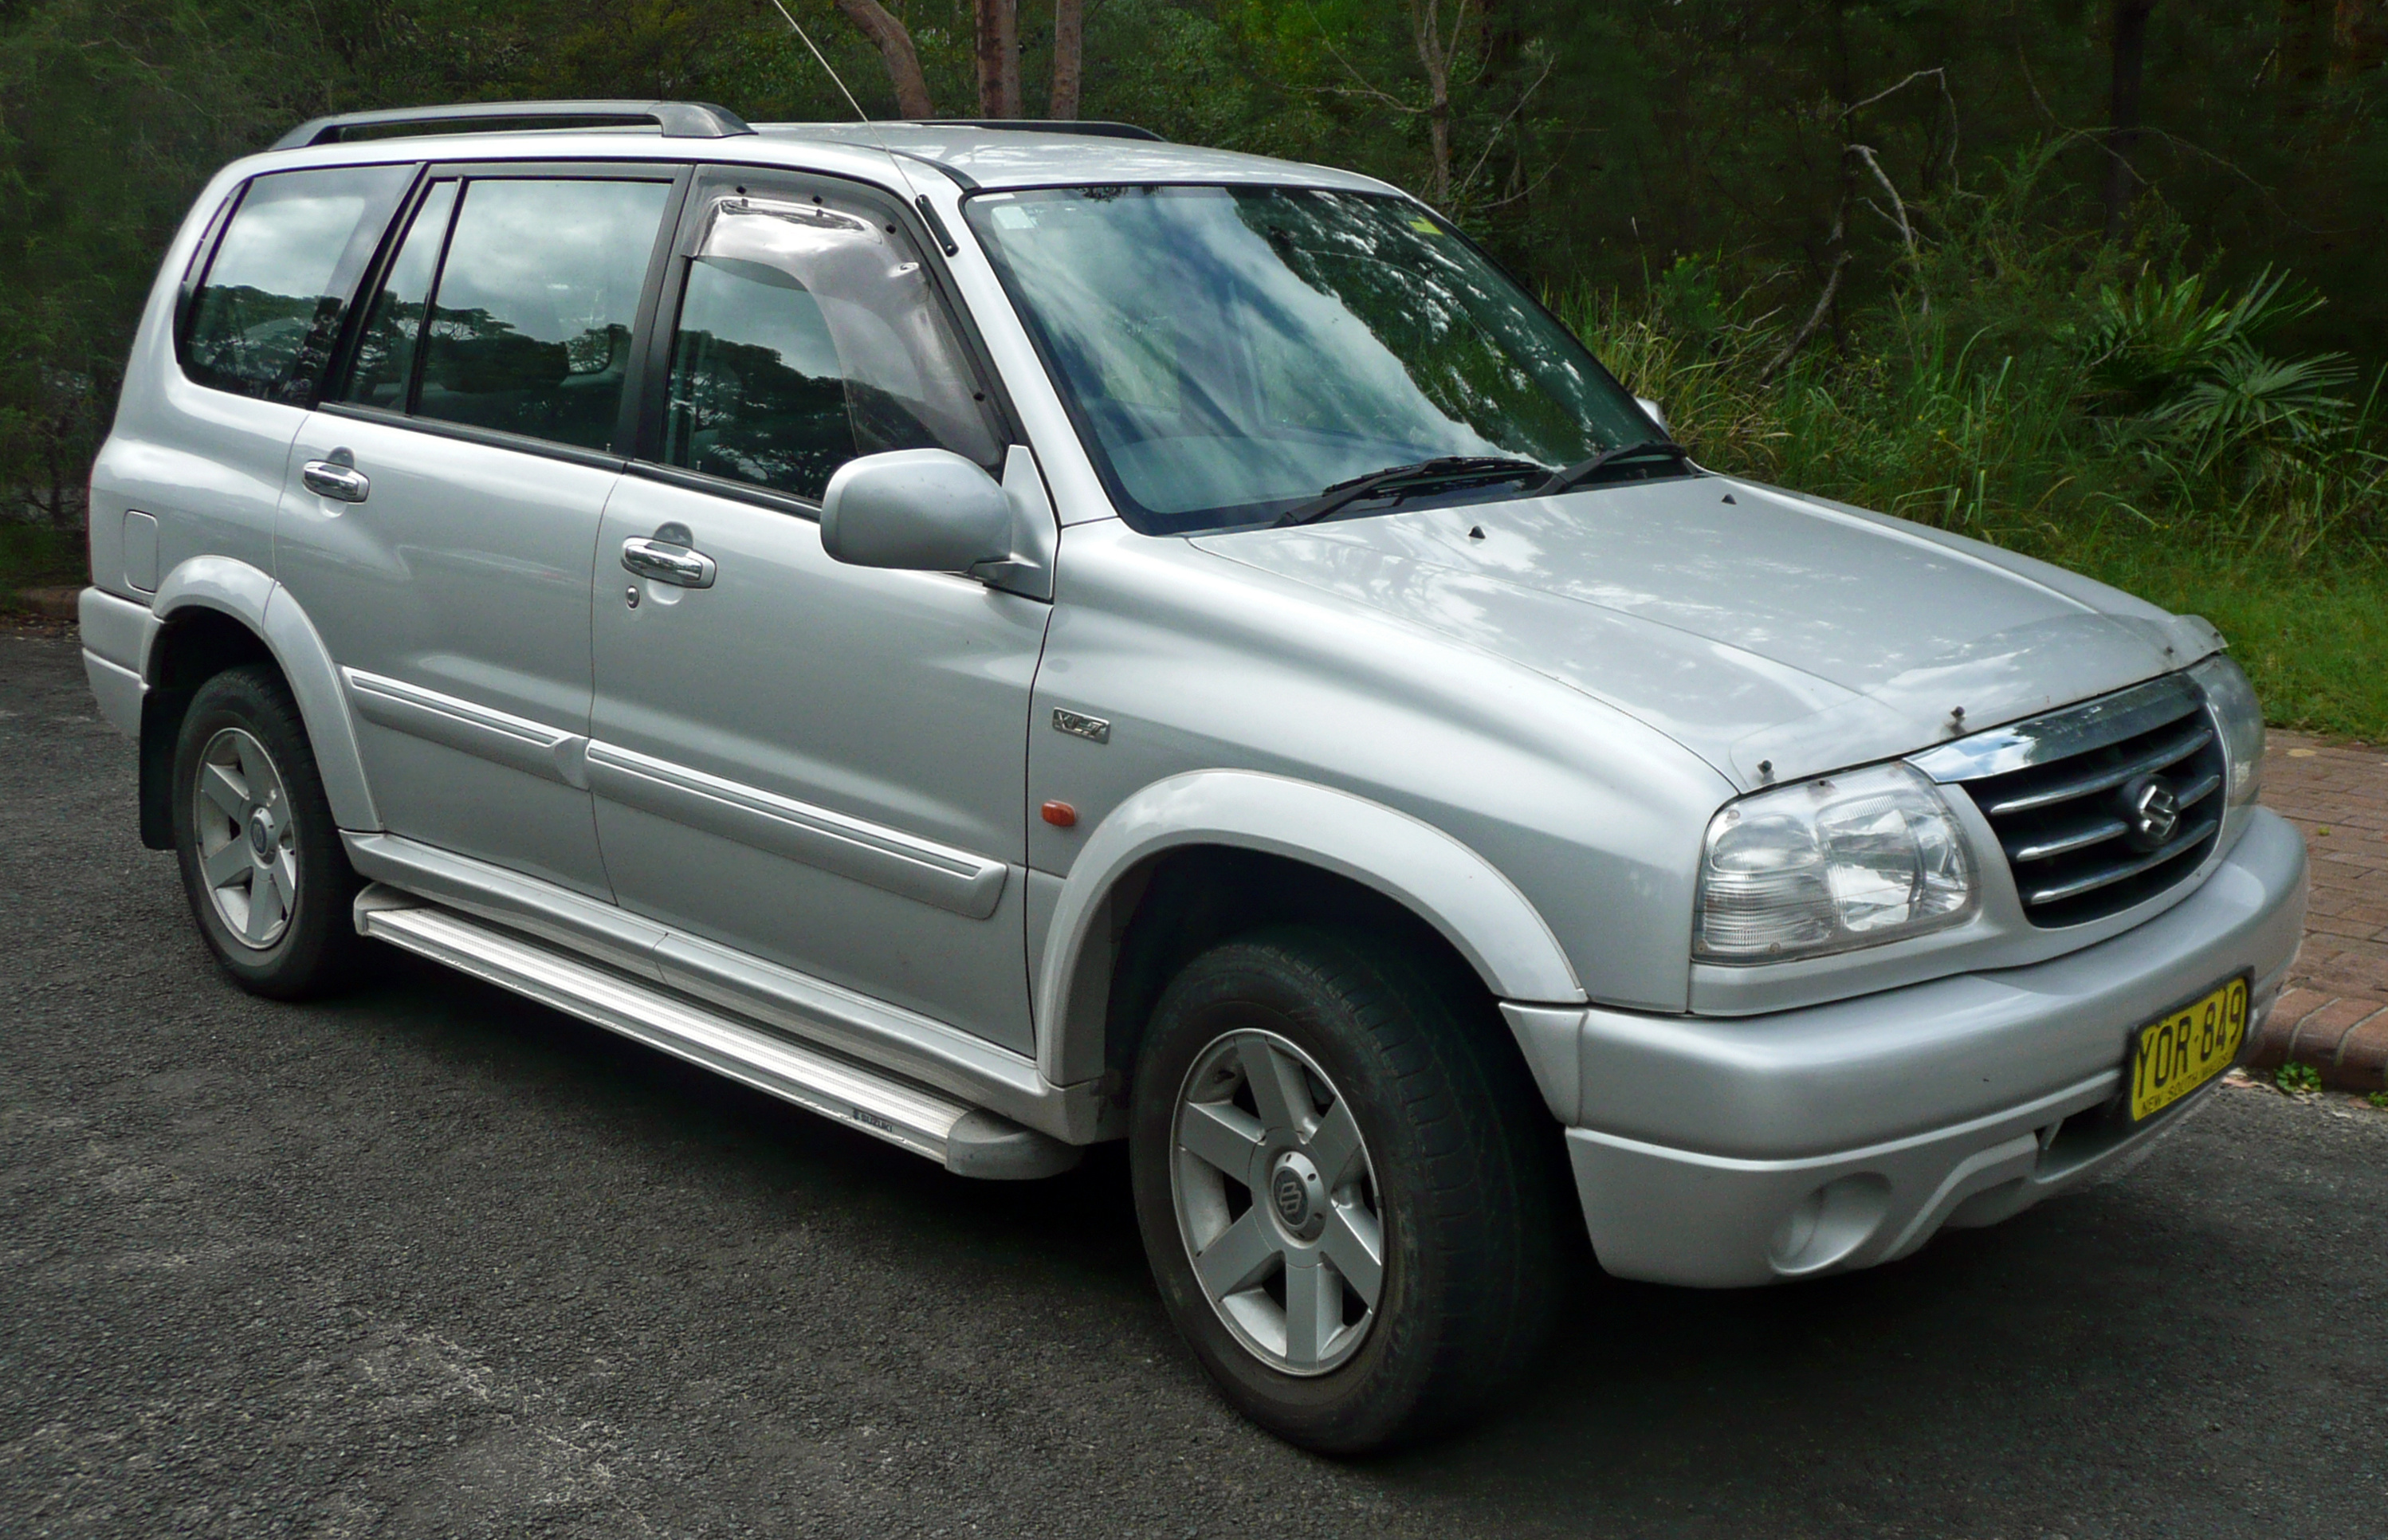 Suzuki Escudo, 2001 model, Grand Vitara, SUV, 3000x1940 HD Desktop